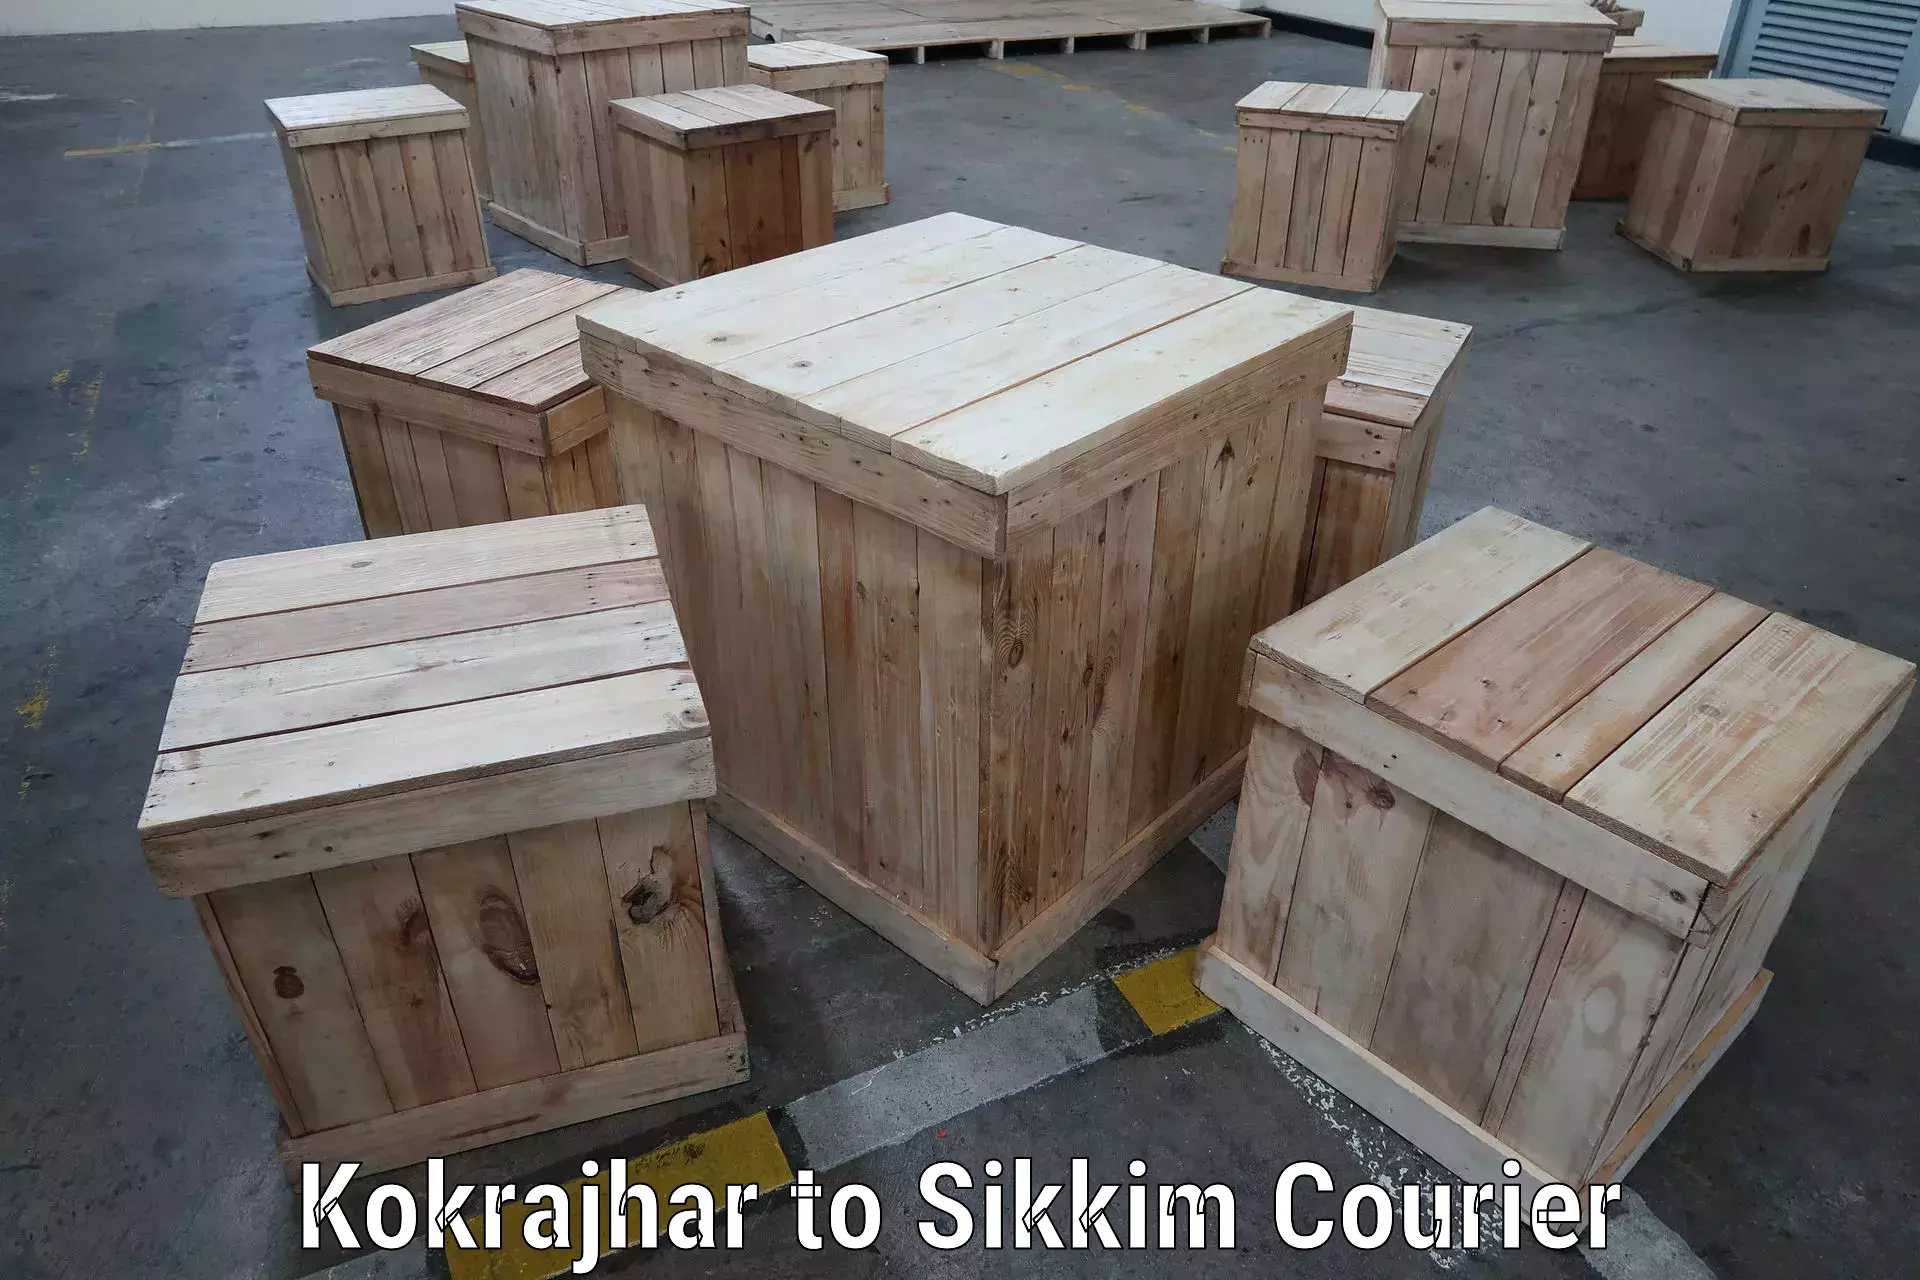 Modern delivery methods in Kokrajhar to East Sikkim